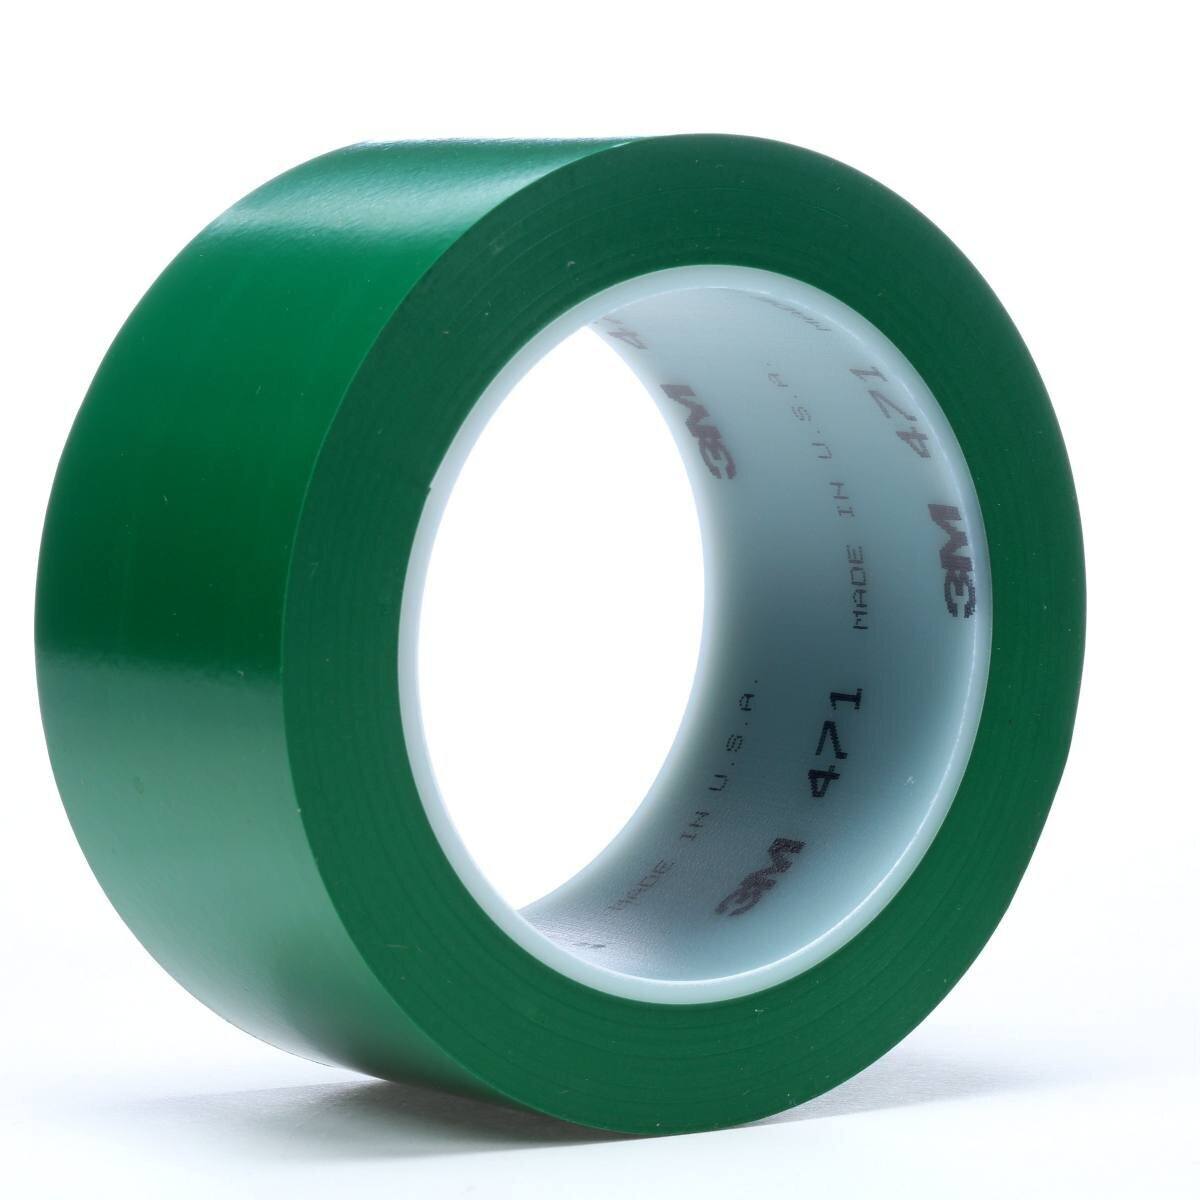 3M ruban adhésif en PVC souple 471 F, vert, 50 mm x 33 m, 0,13 mm, emballage individuel pratique